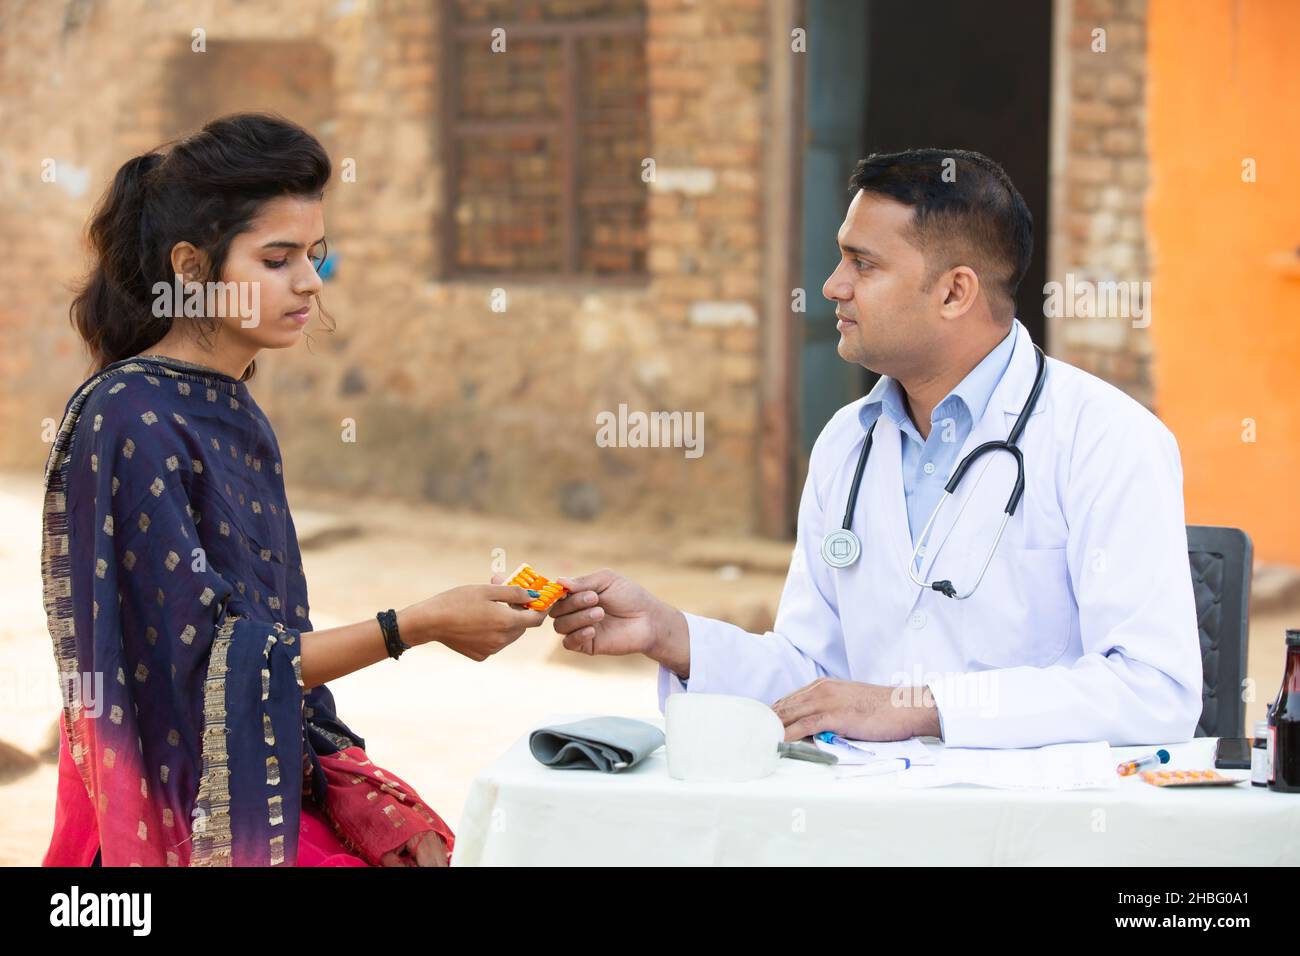 Medico indiano maschio dare medicina a giovane paziente adulto in villaggio, donna ottenere tablet droga da persona medica all'aperto. Sanità rurale india. Foto Stock